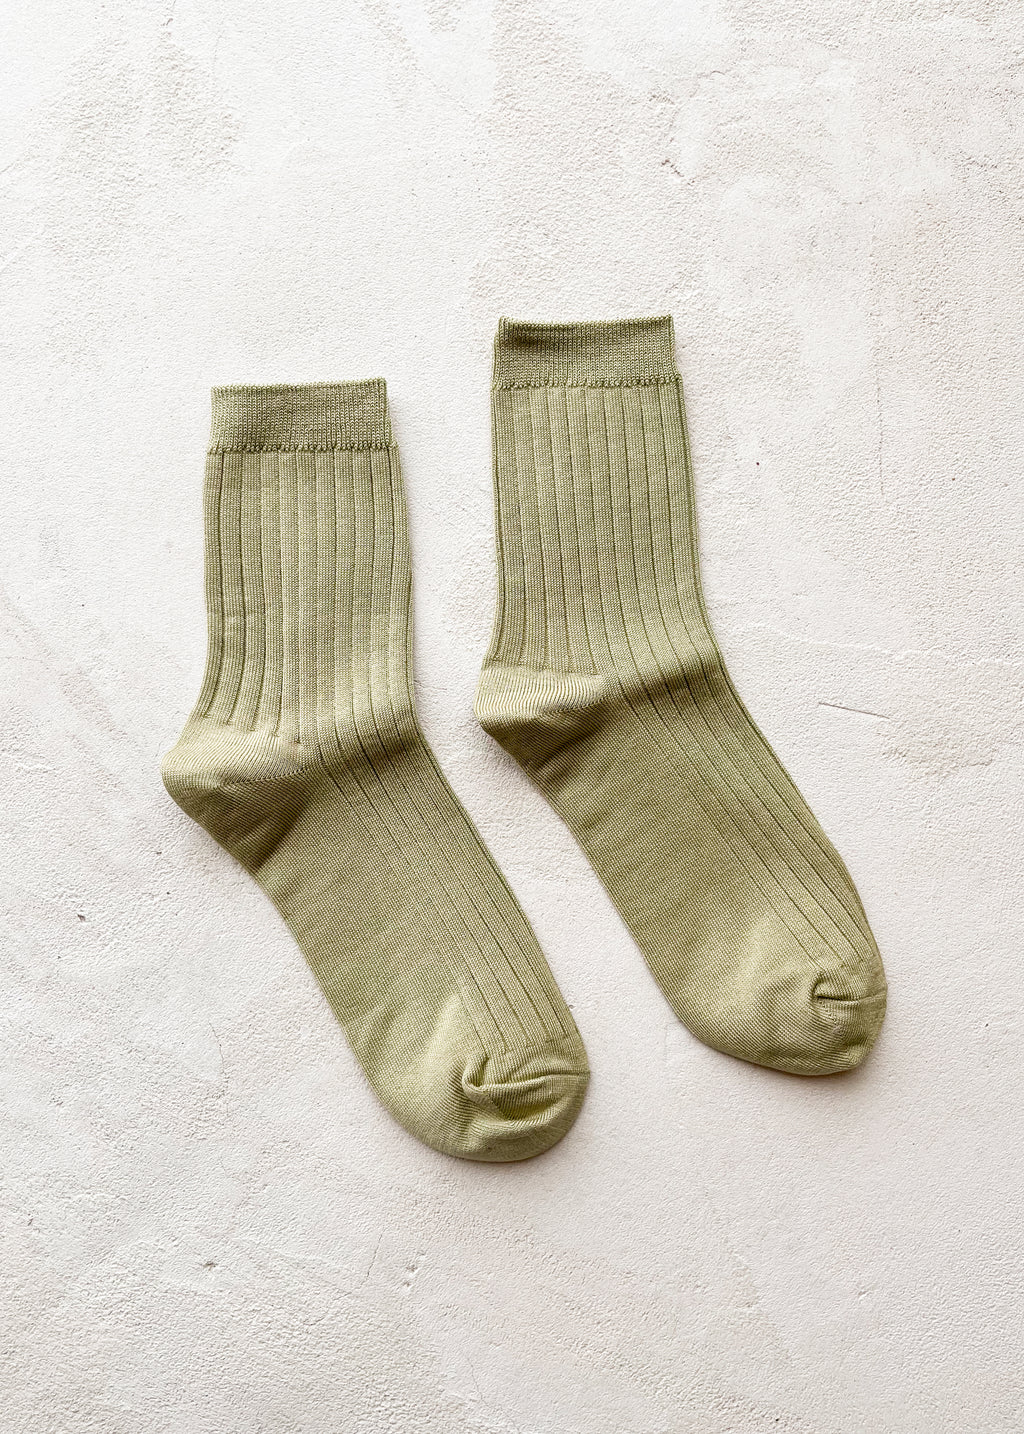 Her Socks | Avocado